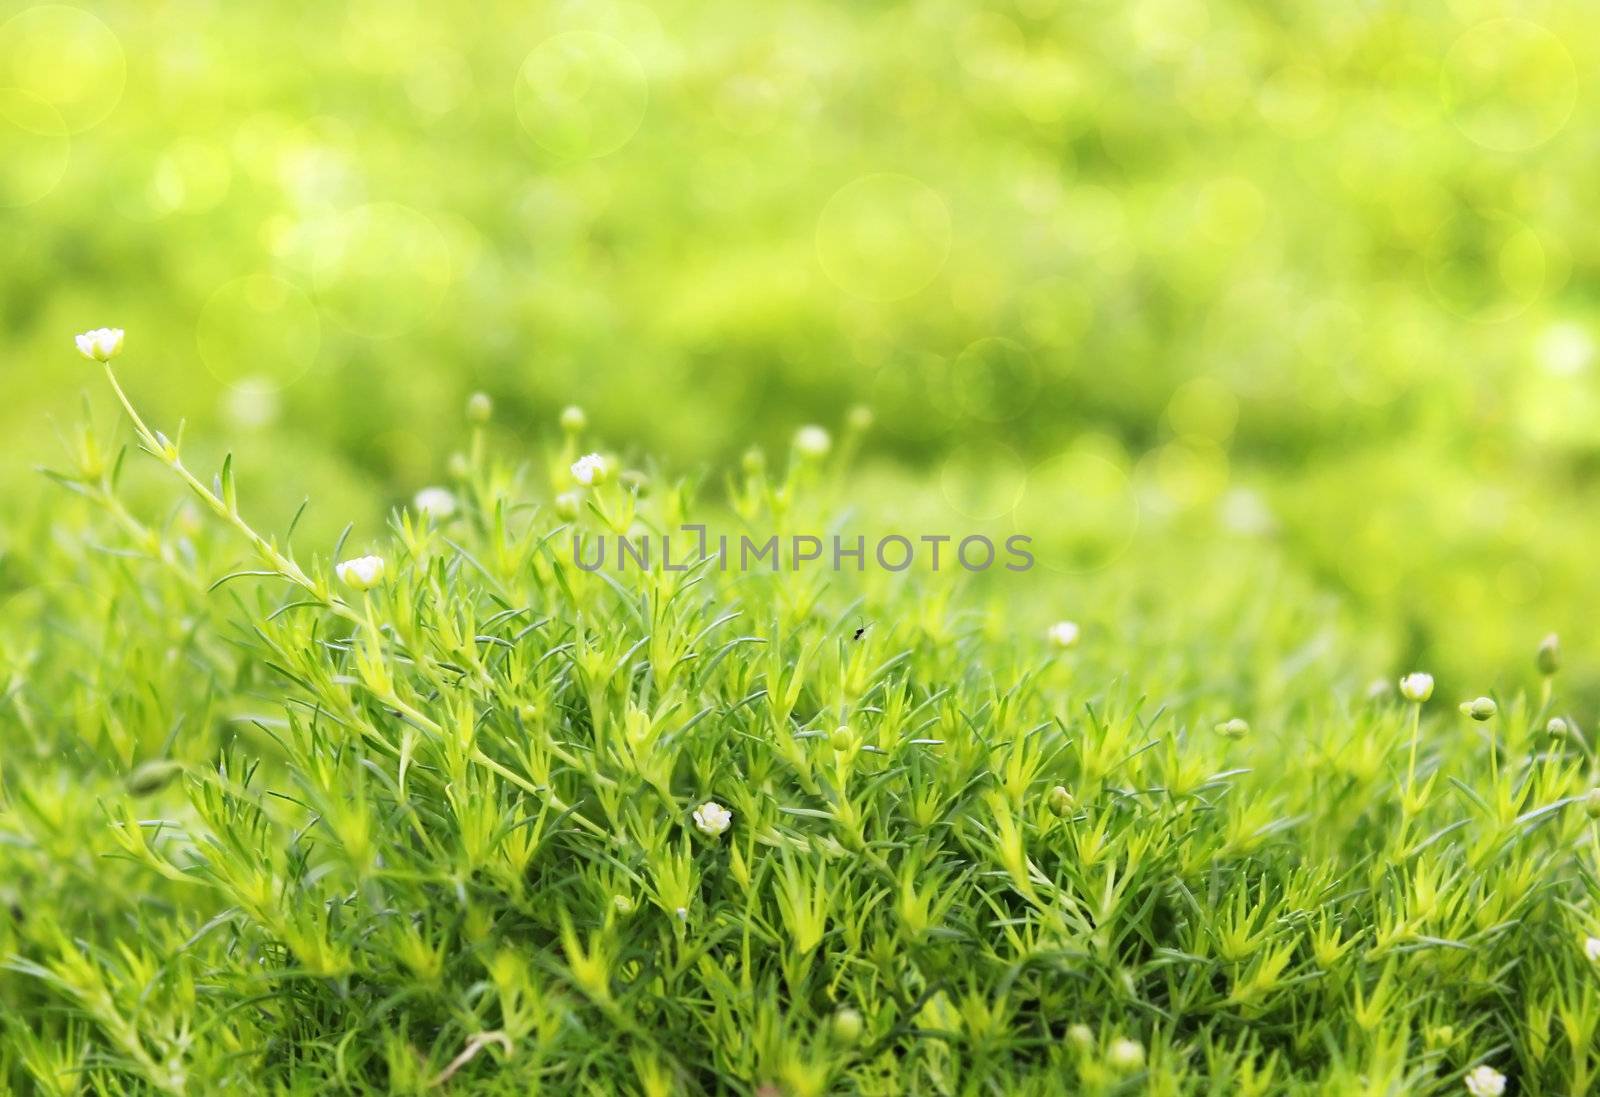 green grass carpet by irisphoto4